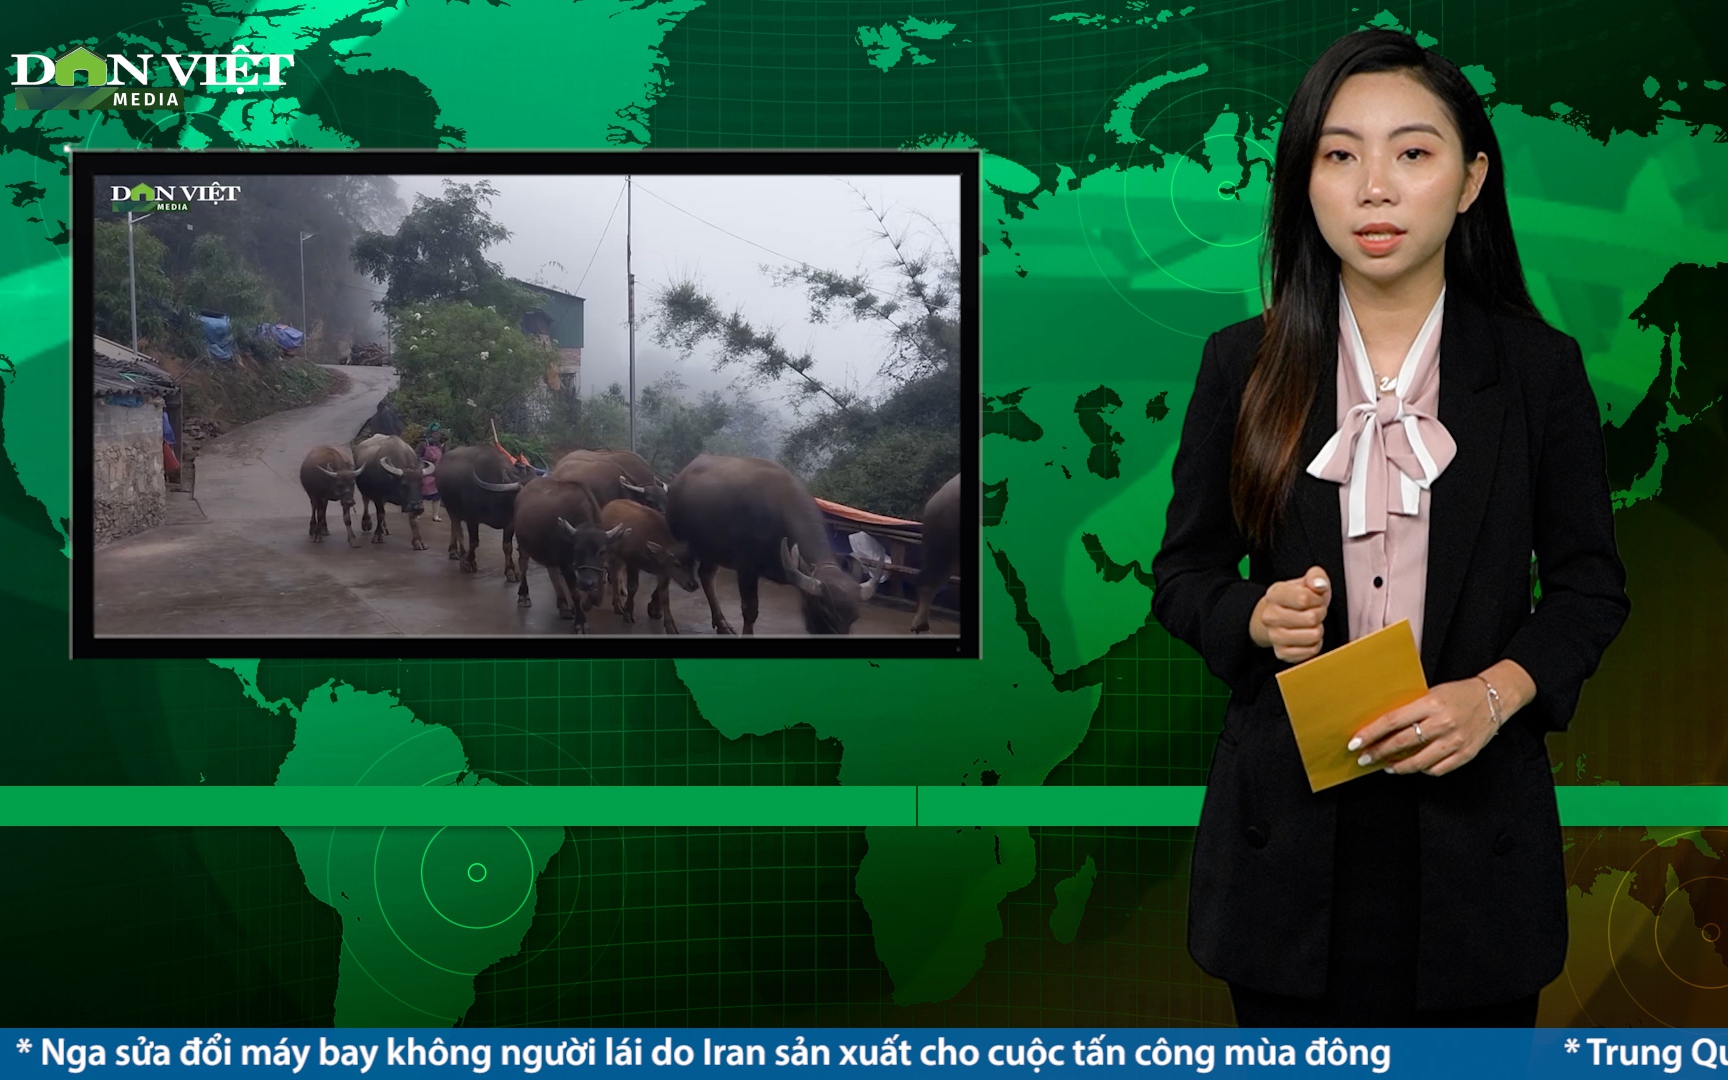 Bản tin Dân Việt Nóng ngày 9/12: Vùng cao Lào Cai ra sức bảo vệ đàn vật nuôi trước giá rét